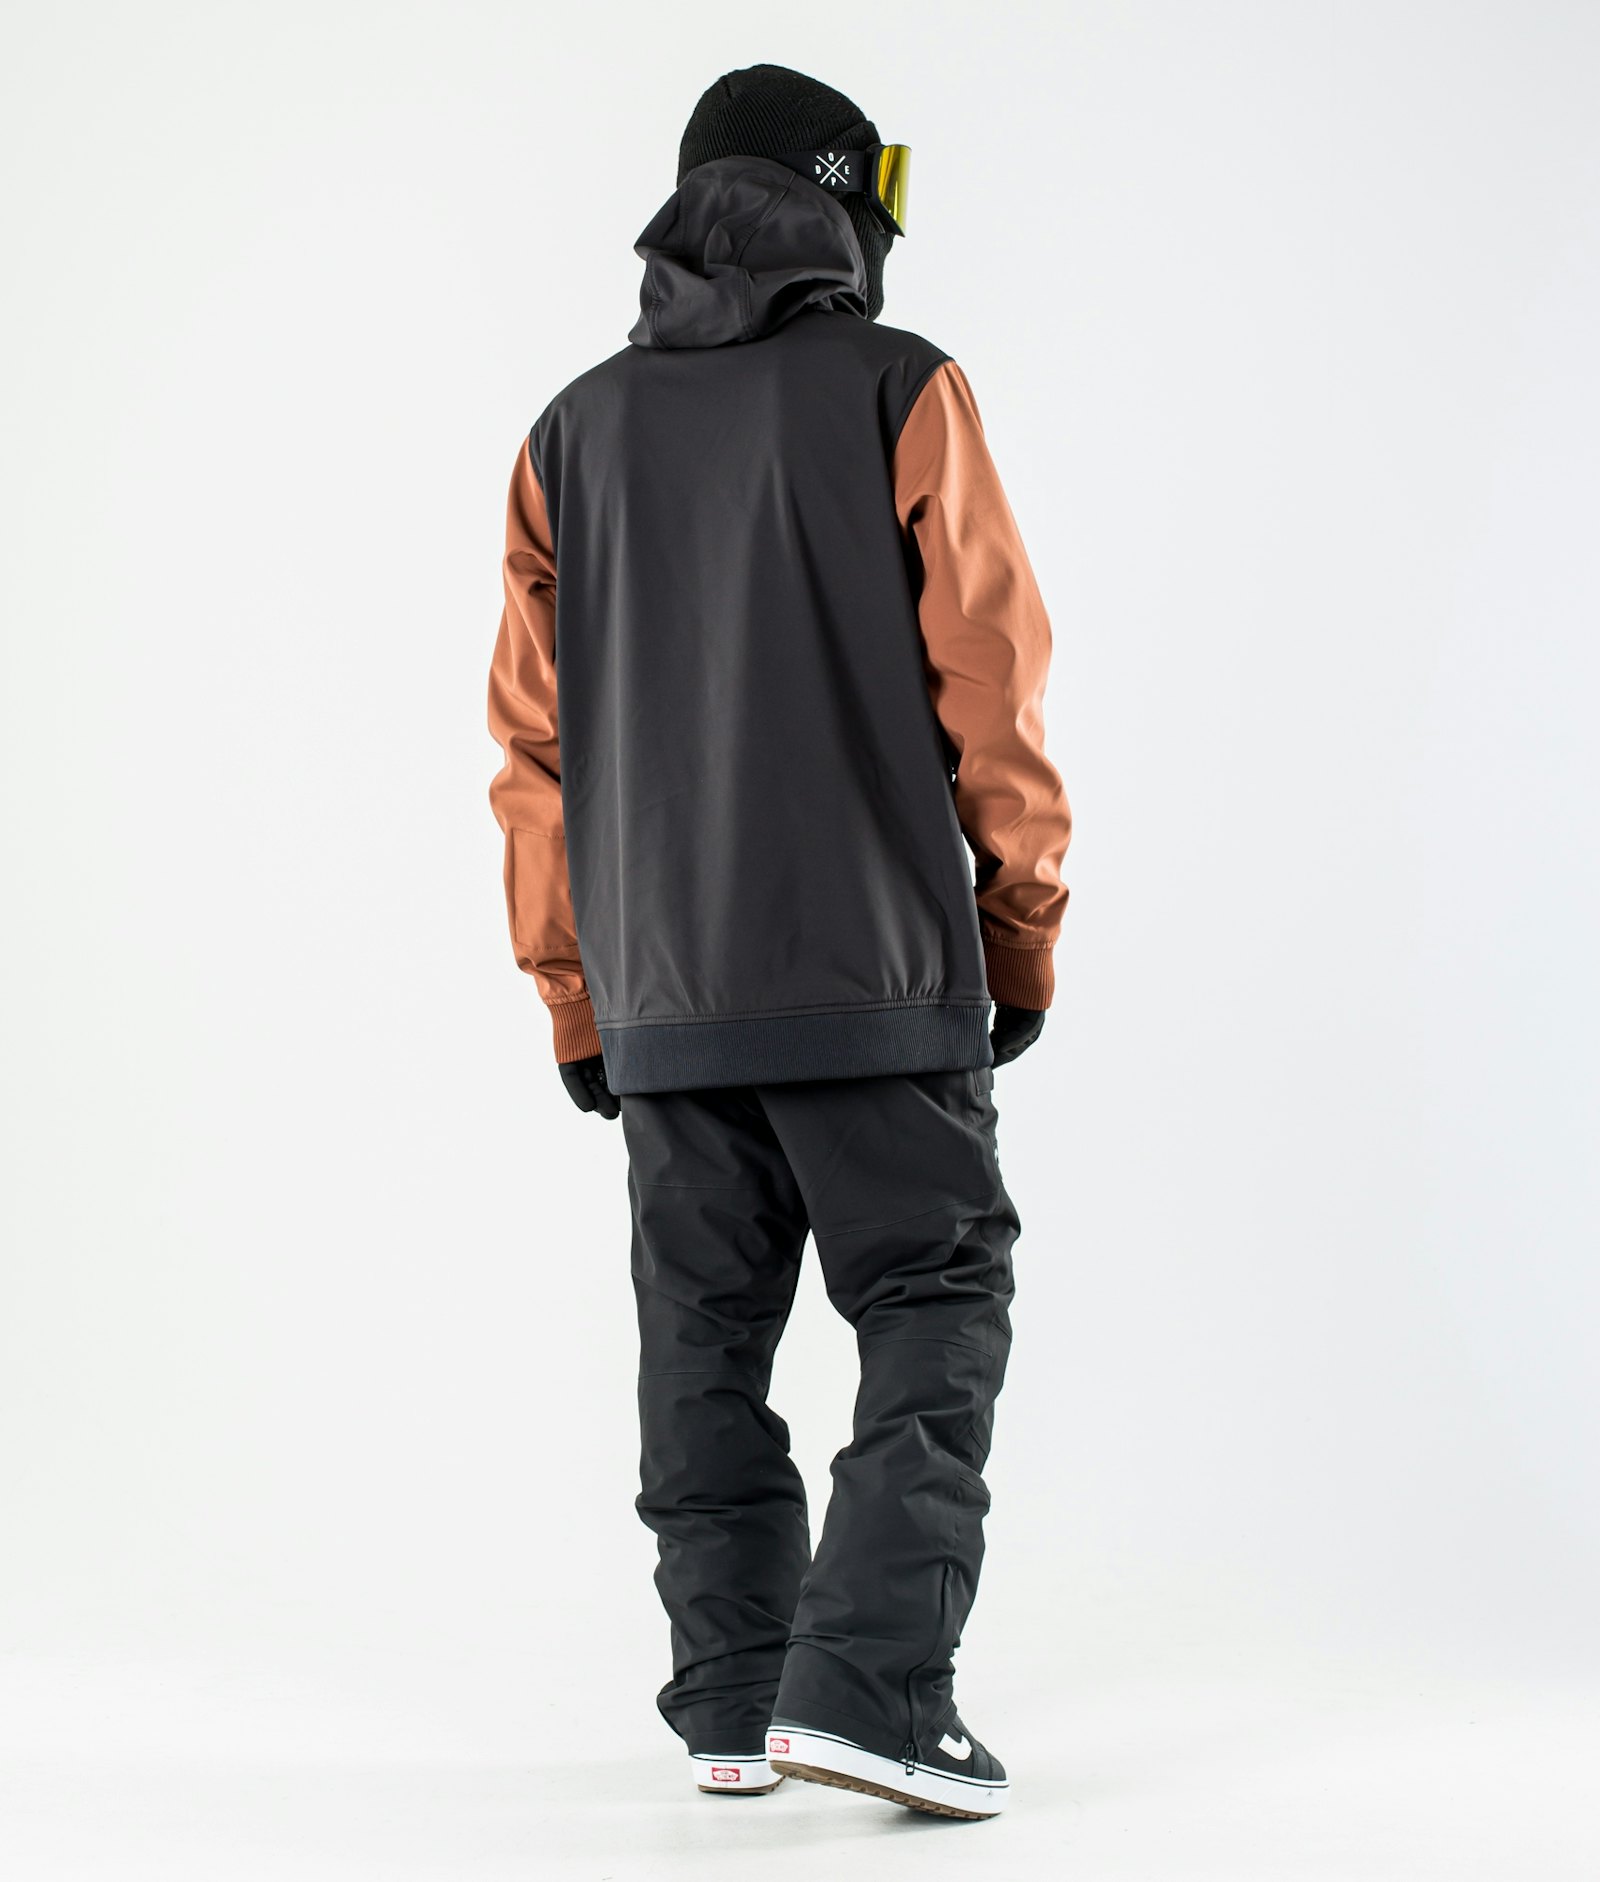 Yeti 10k スノーボードジャケット メンズ Black/Adobe